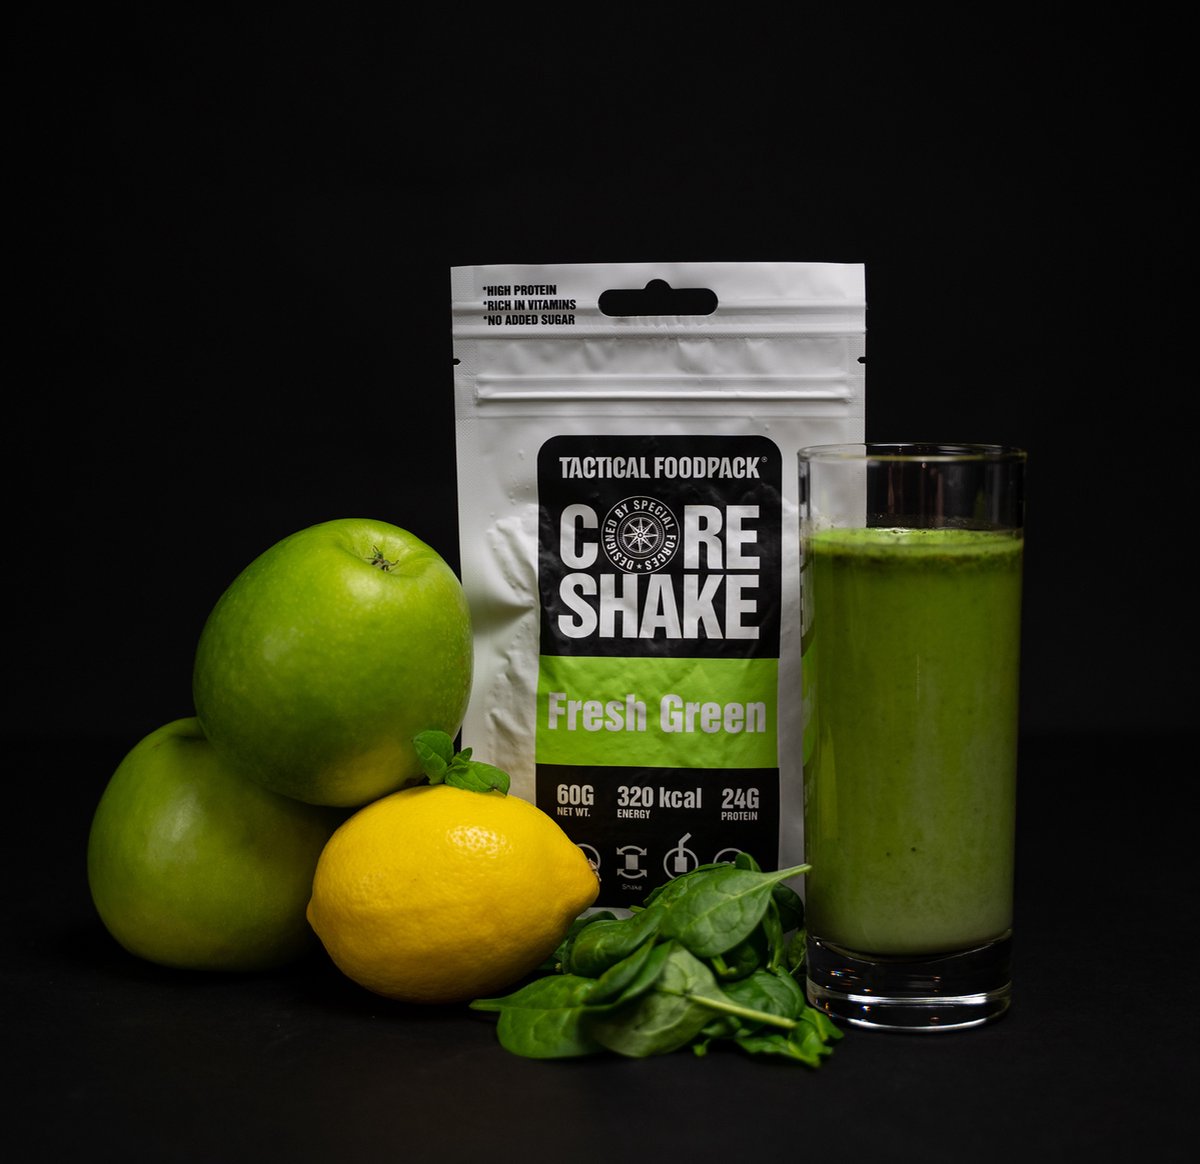 Tactical Foodpack Core Shake Fresh Green - 60g - munt en appel - vitamine en proteïne shake - 287kcal - buitensportvoeding - vriesdroogmaaltijd - survival eten - prepper - minimaal 3 jaar houdbaar - tussendoortje of recovery